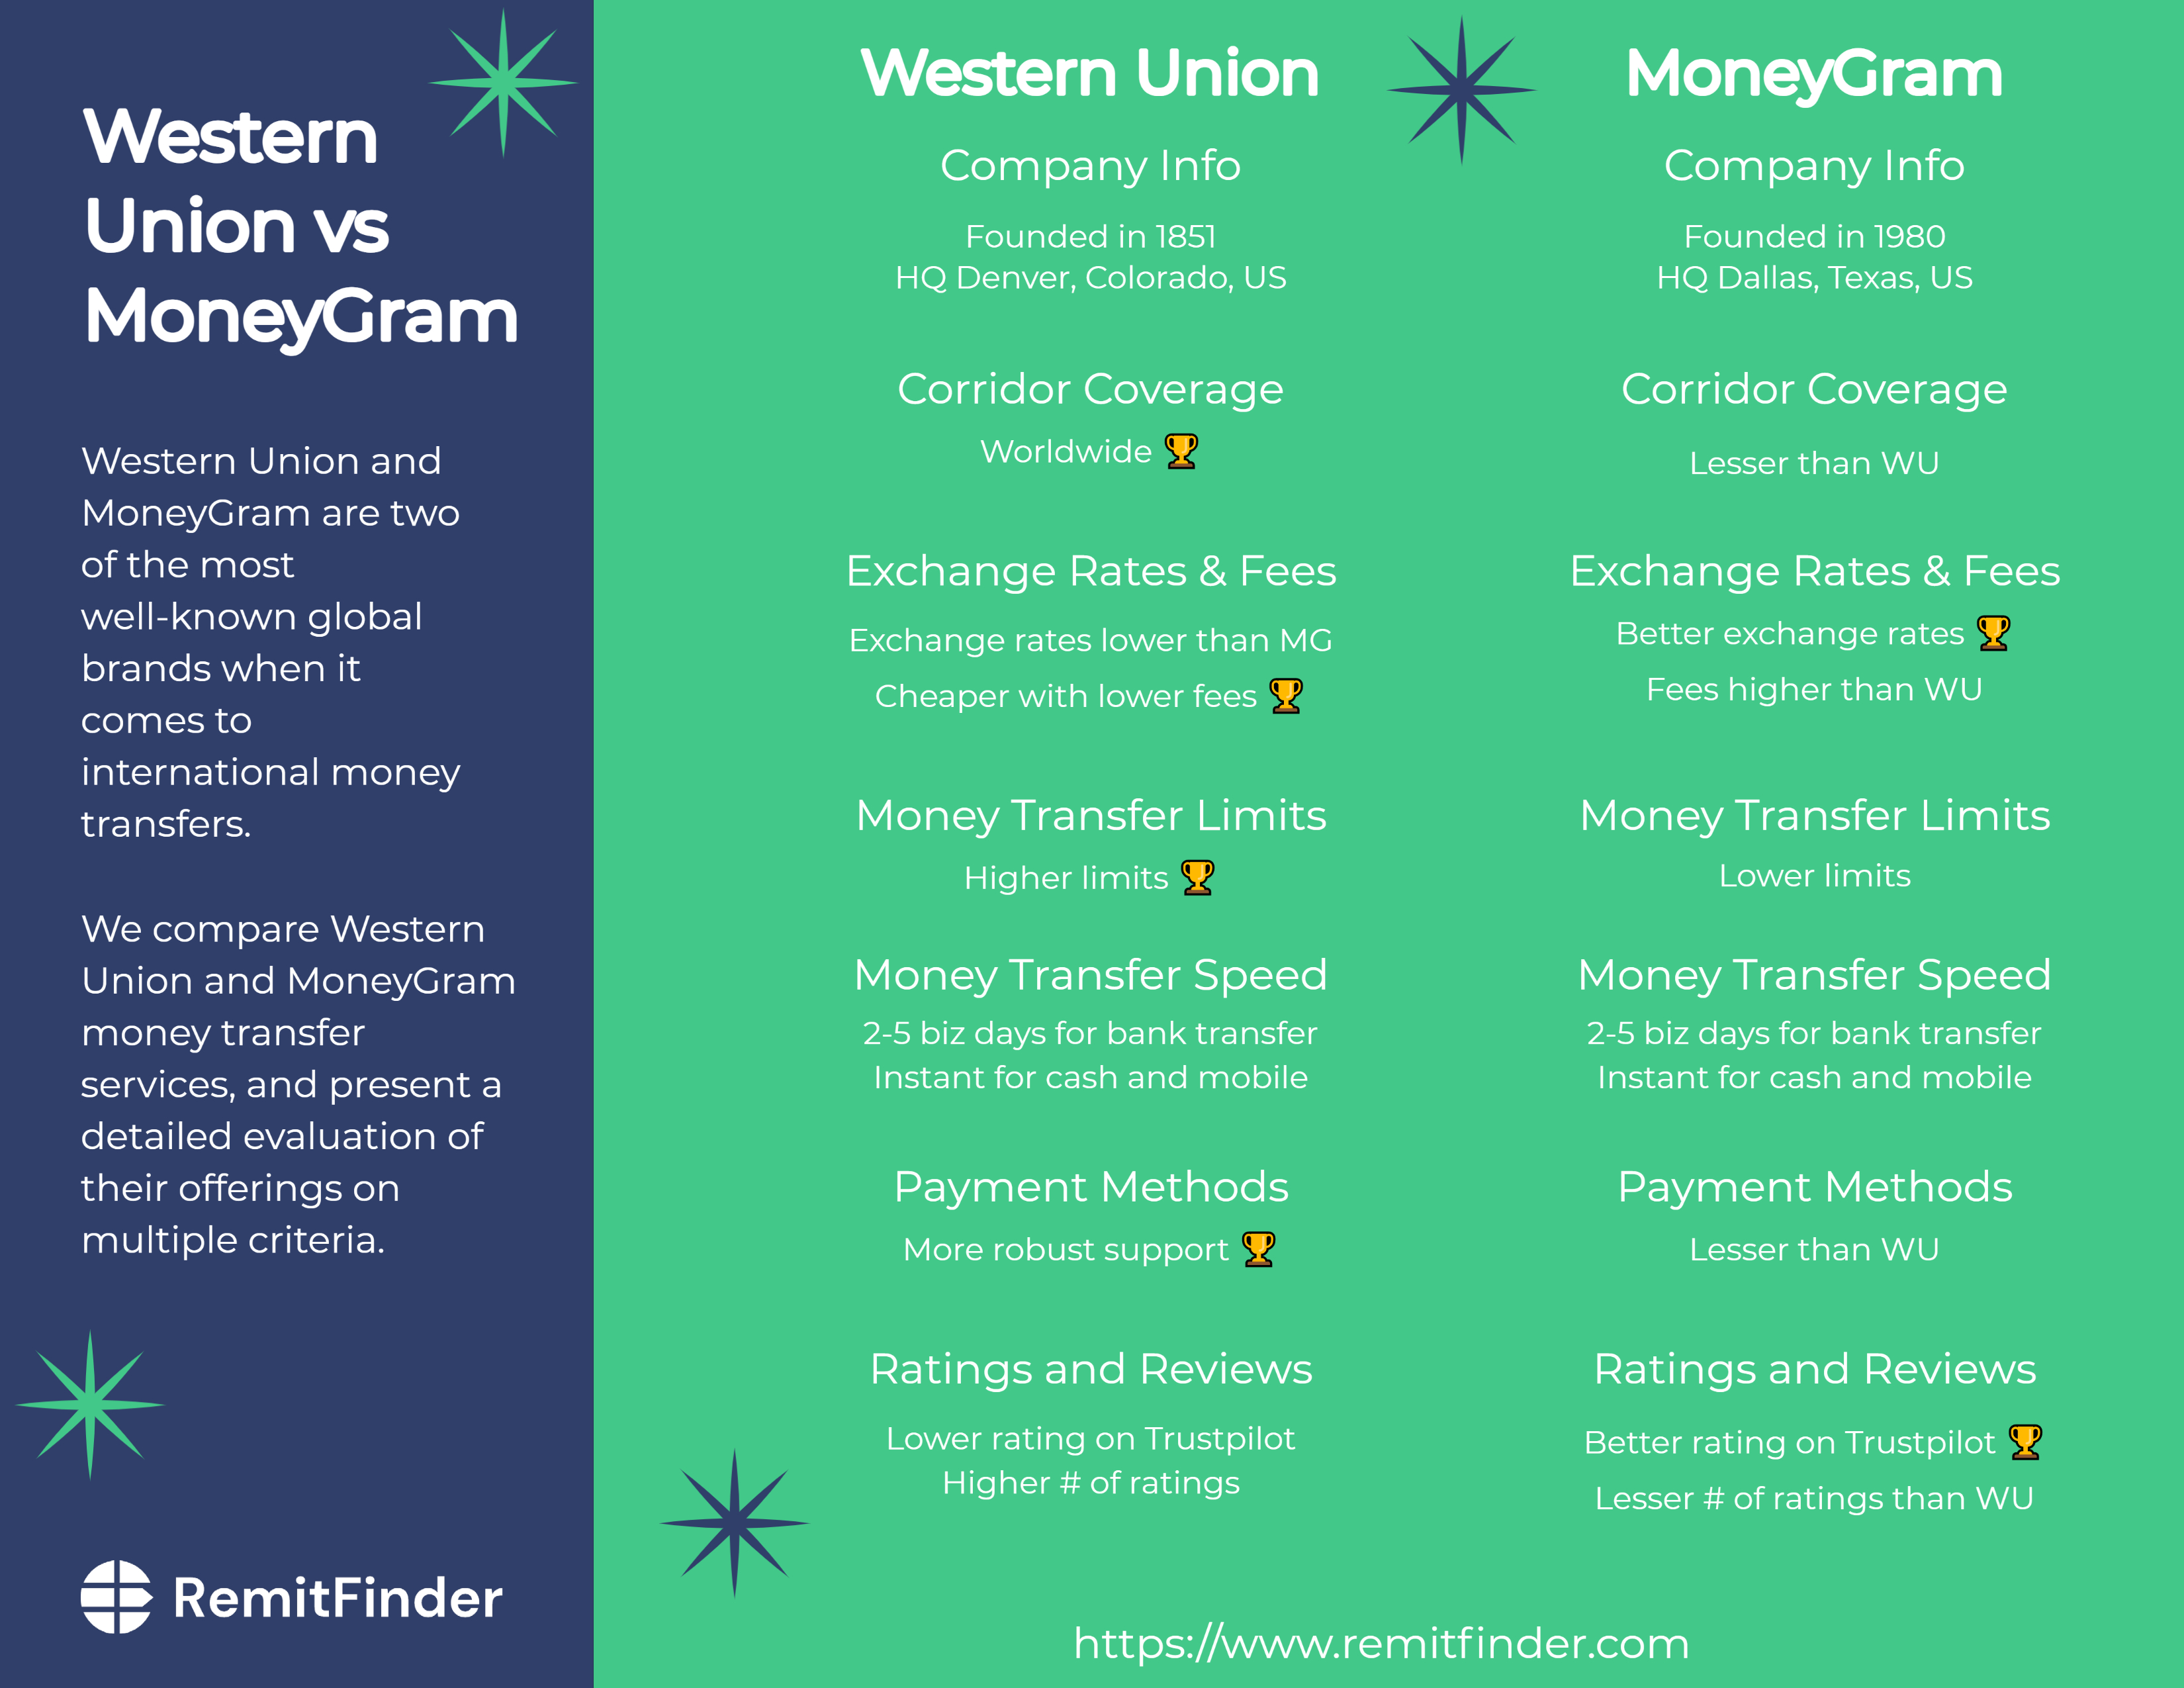 Western Union global  Worldwide money transfer service